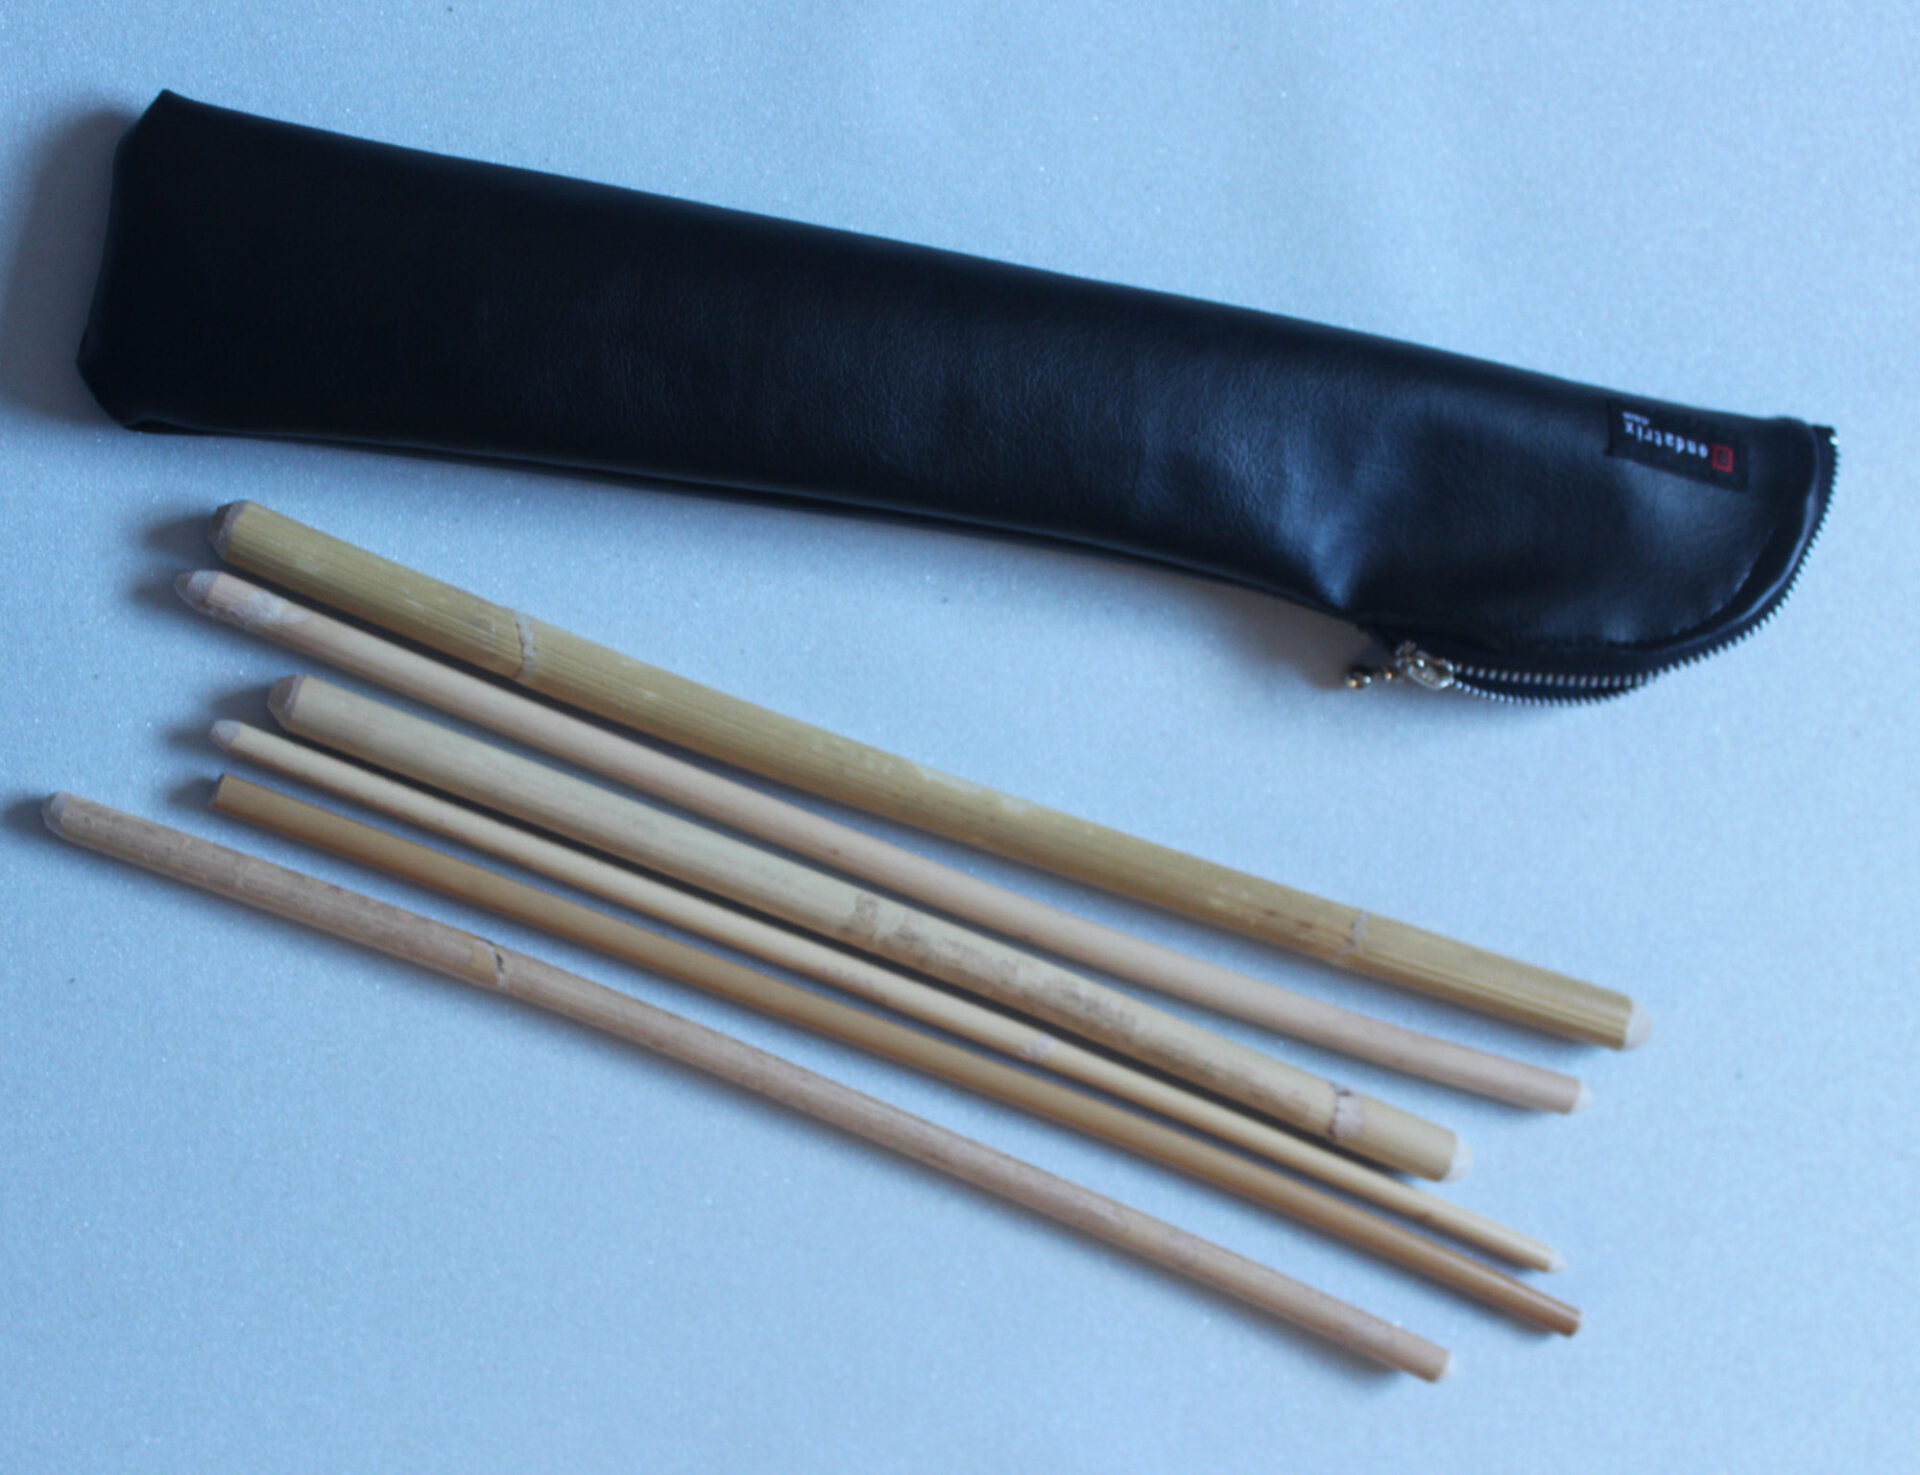 Short cane set – perfect for Bastinado